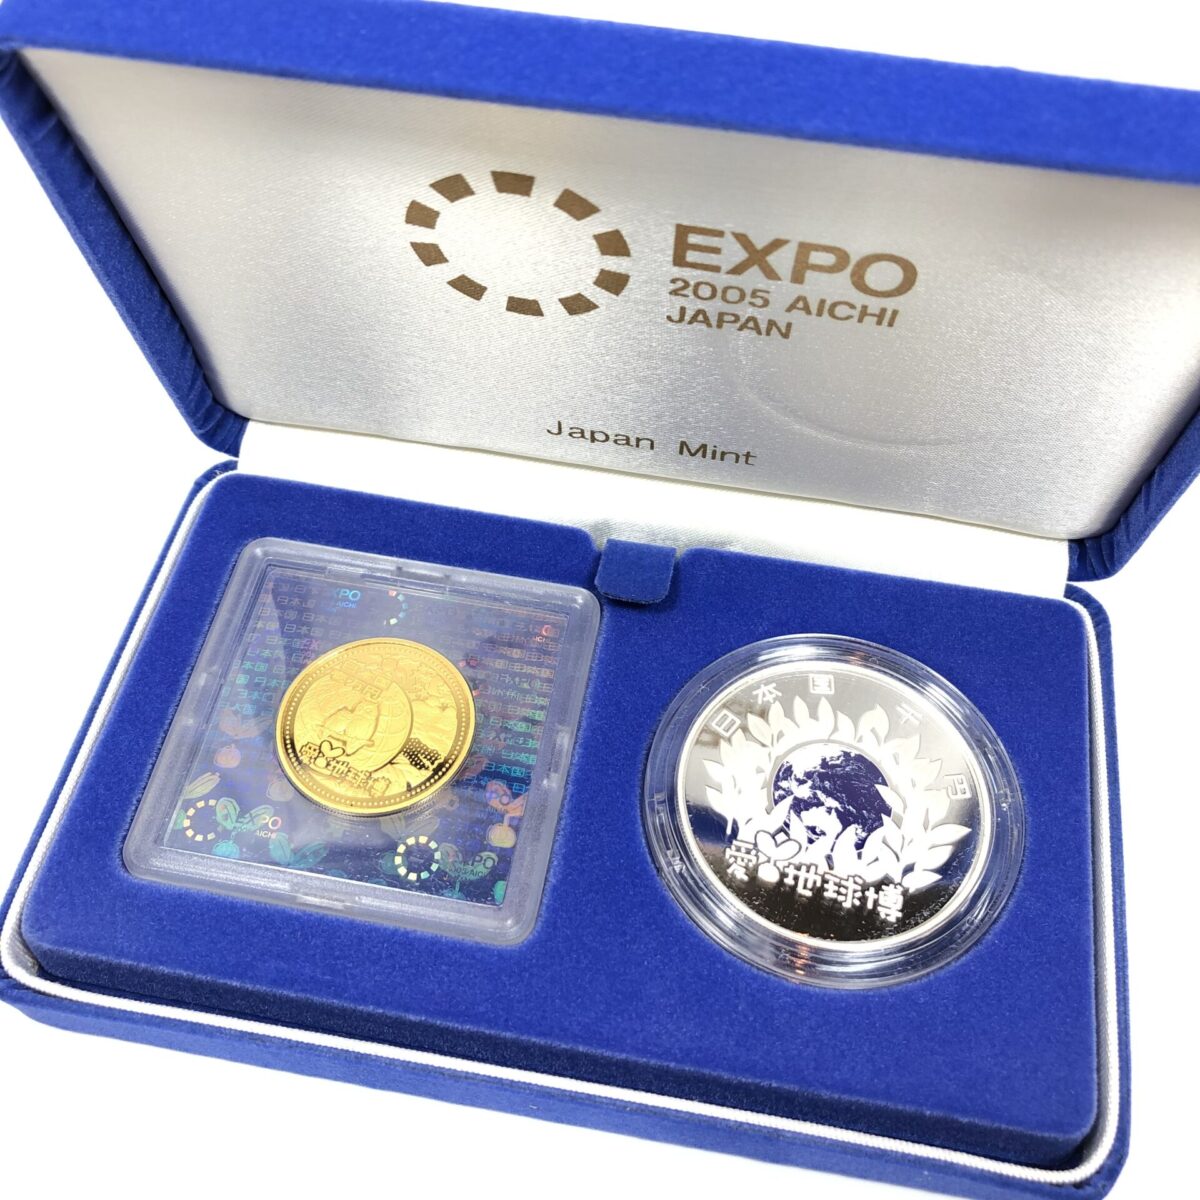 2005年 EXPO 日本国際博覧会記念 1万円 金貨 純金 K24